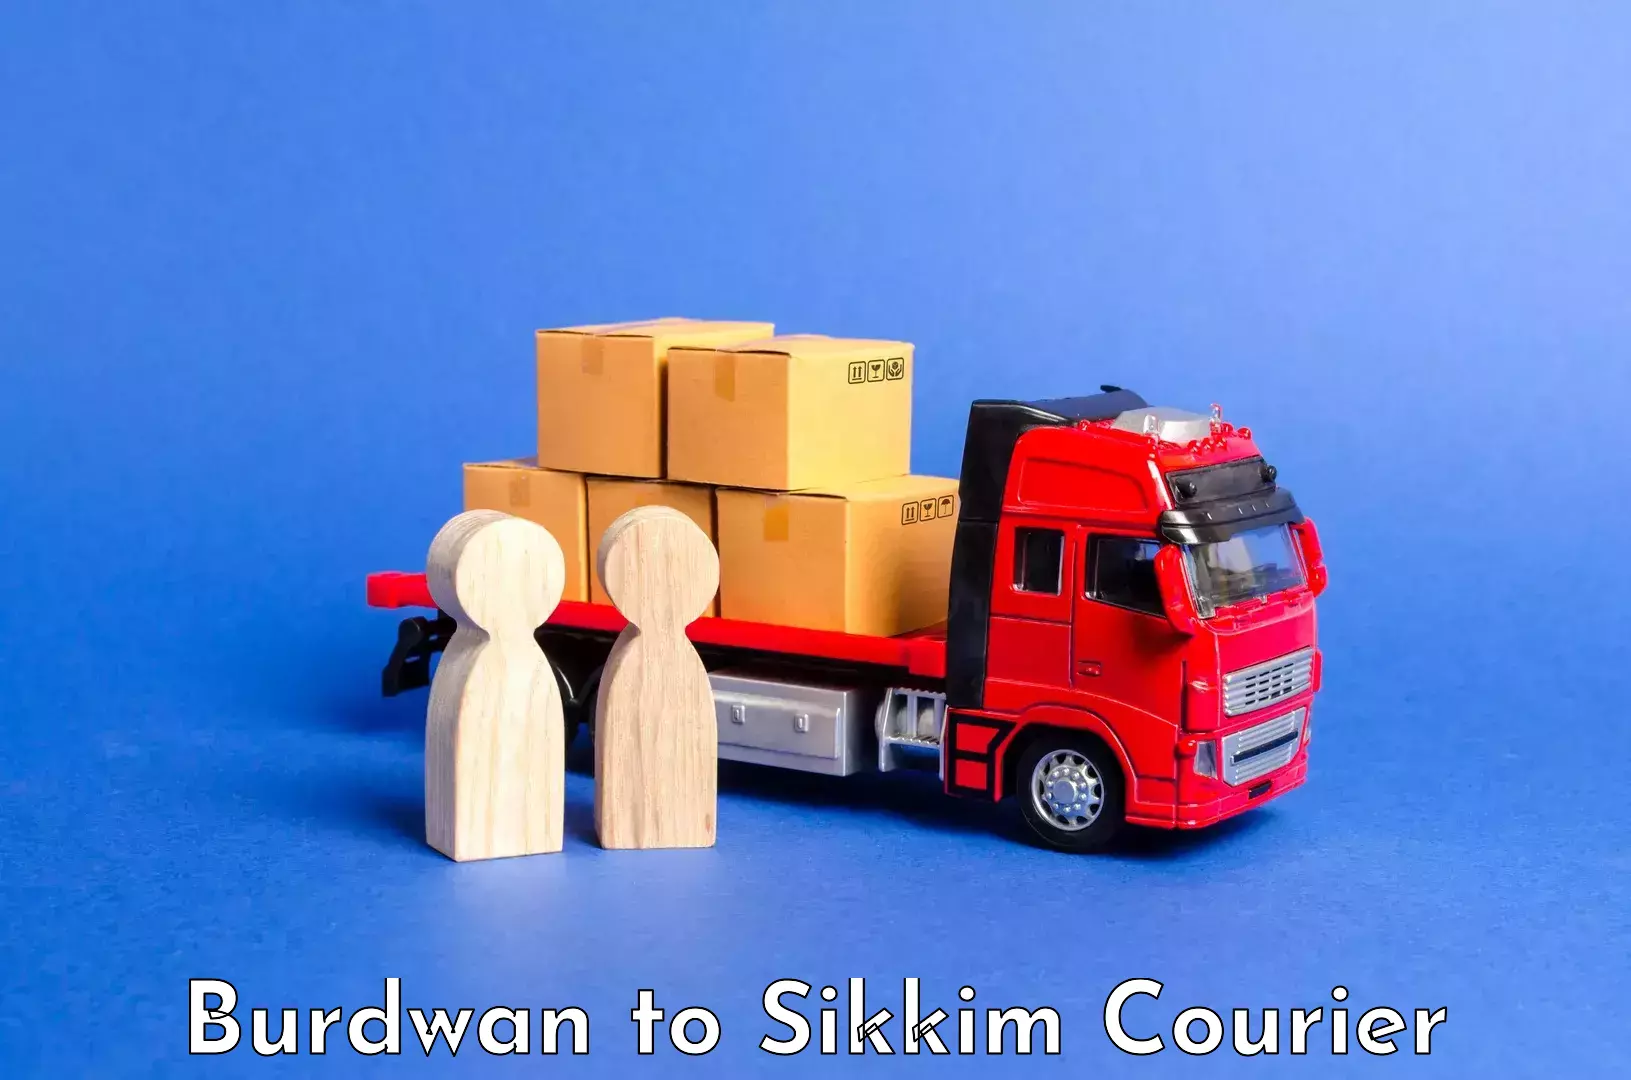 Luggage shipment specialists Burdwan to West Sikkim